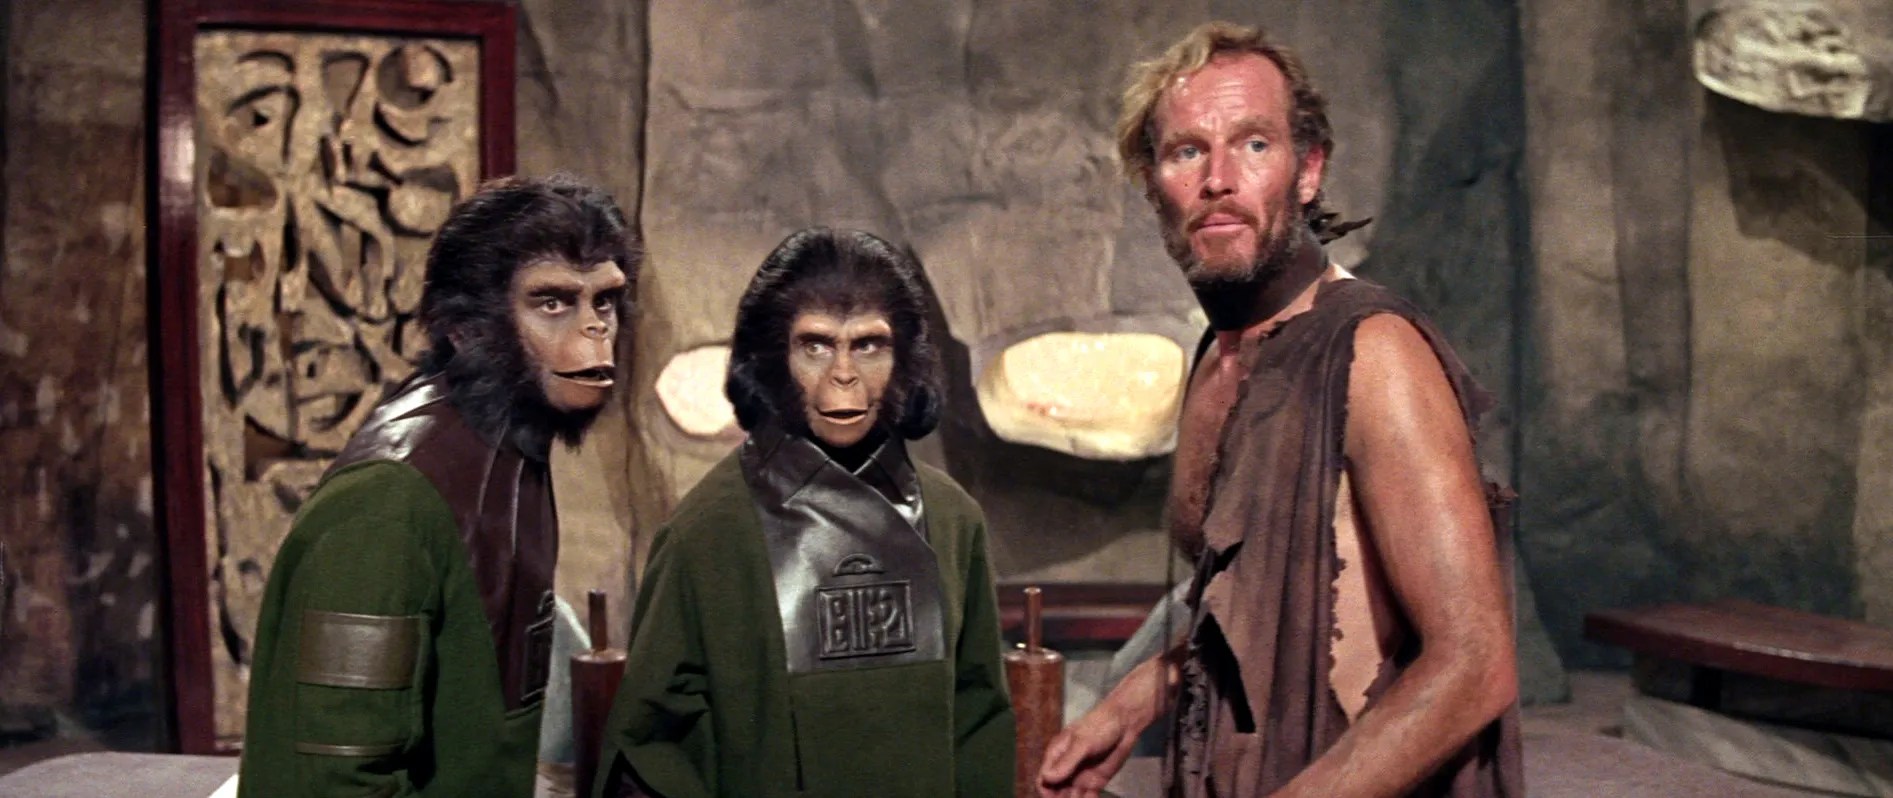 10 лучших фильмов «Планета обезьян» по рейтингу